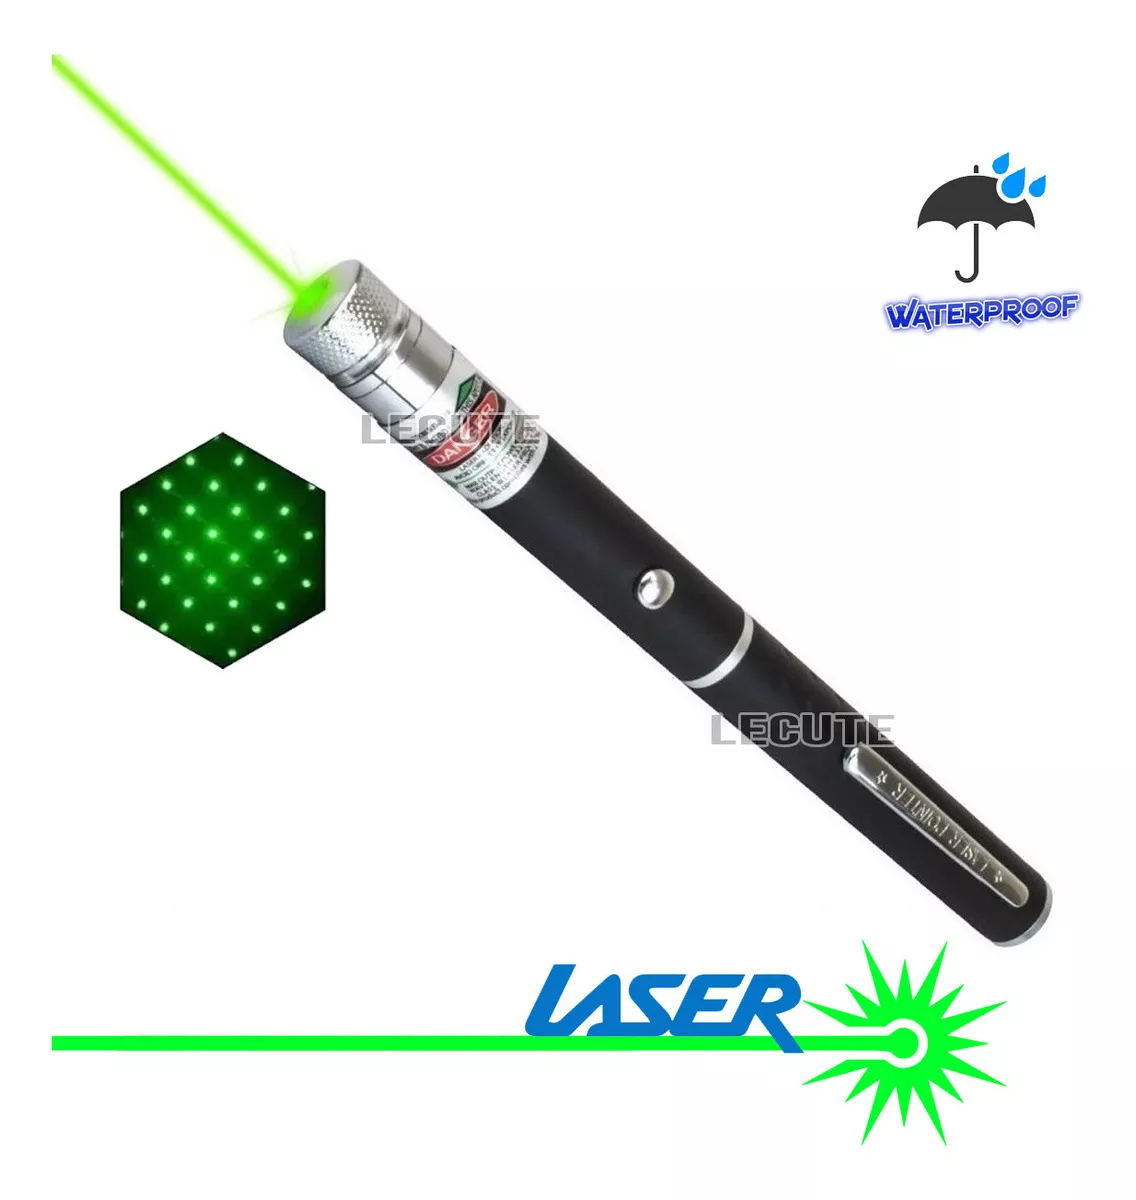 Tercera imagen para búsqueda de puntero laser